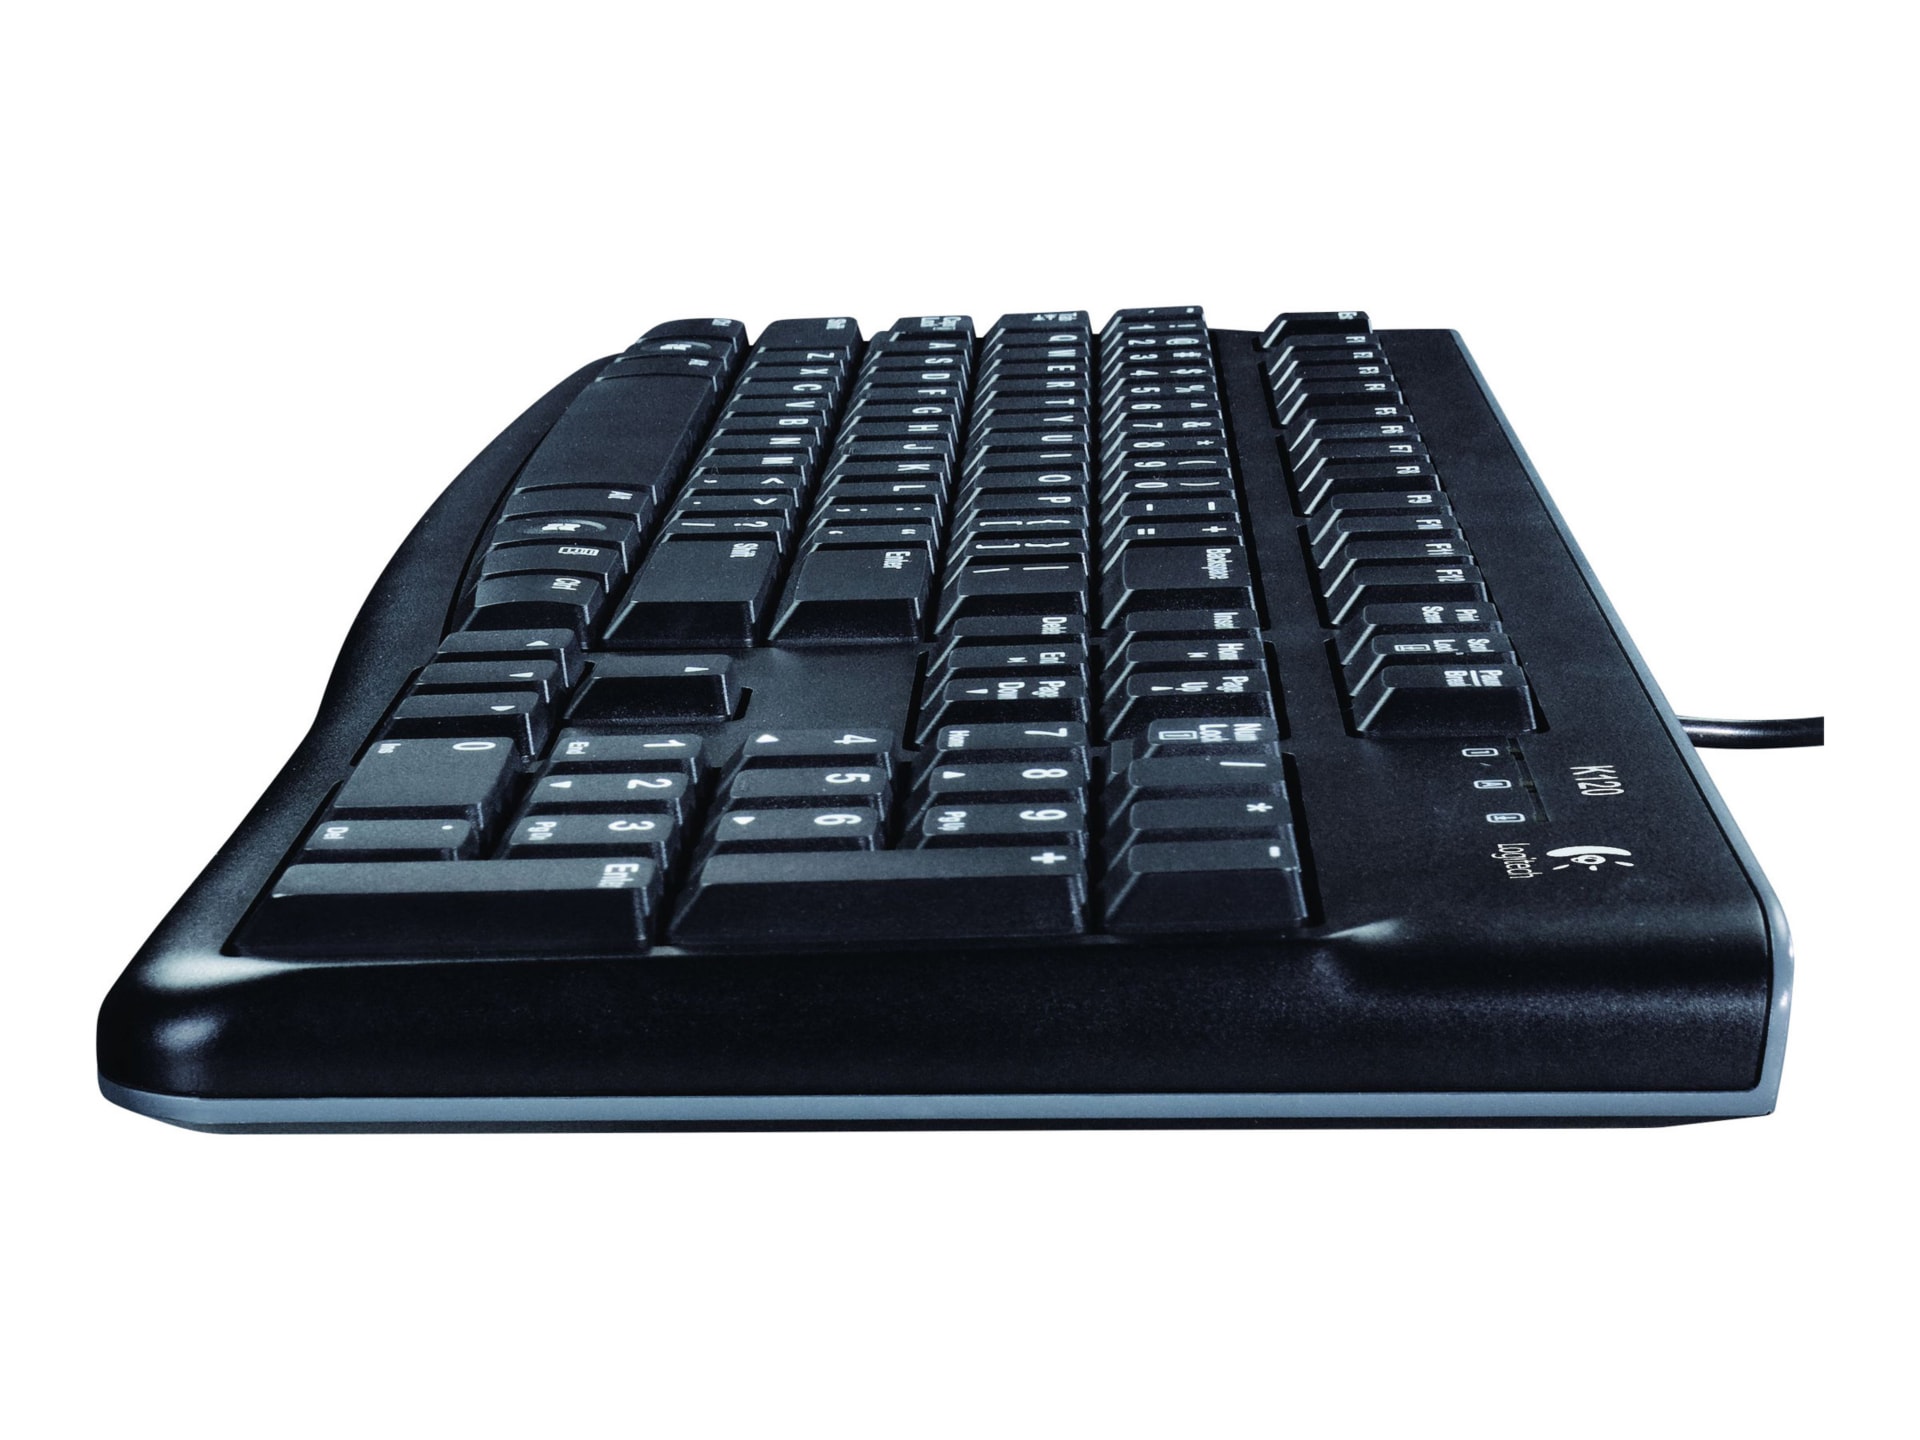 Logitech Keyboard K120 - English